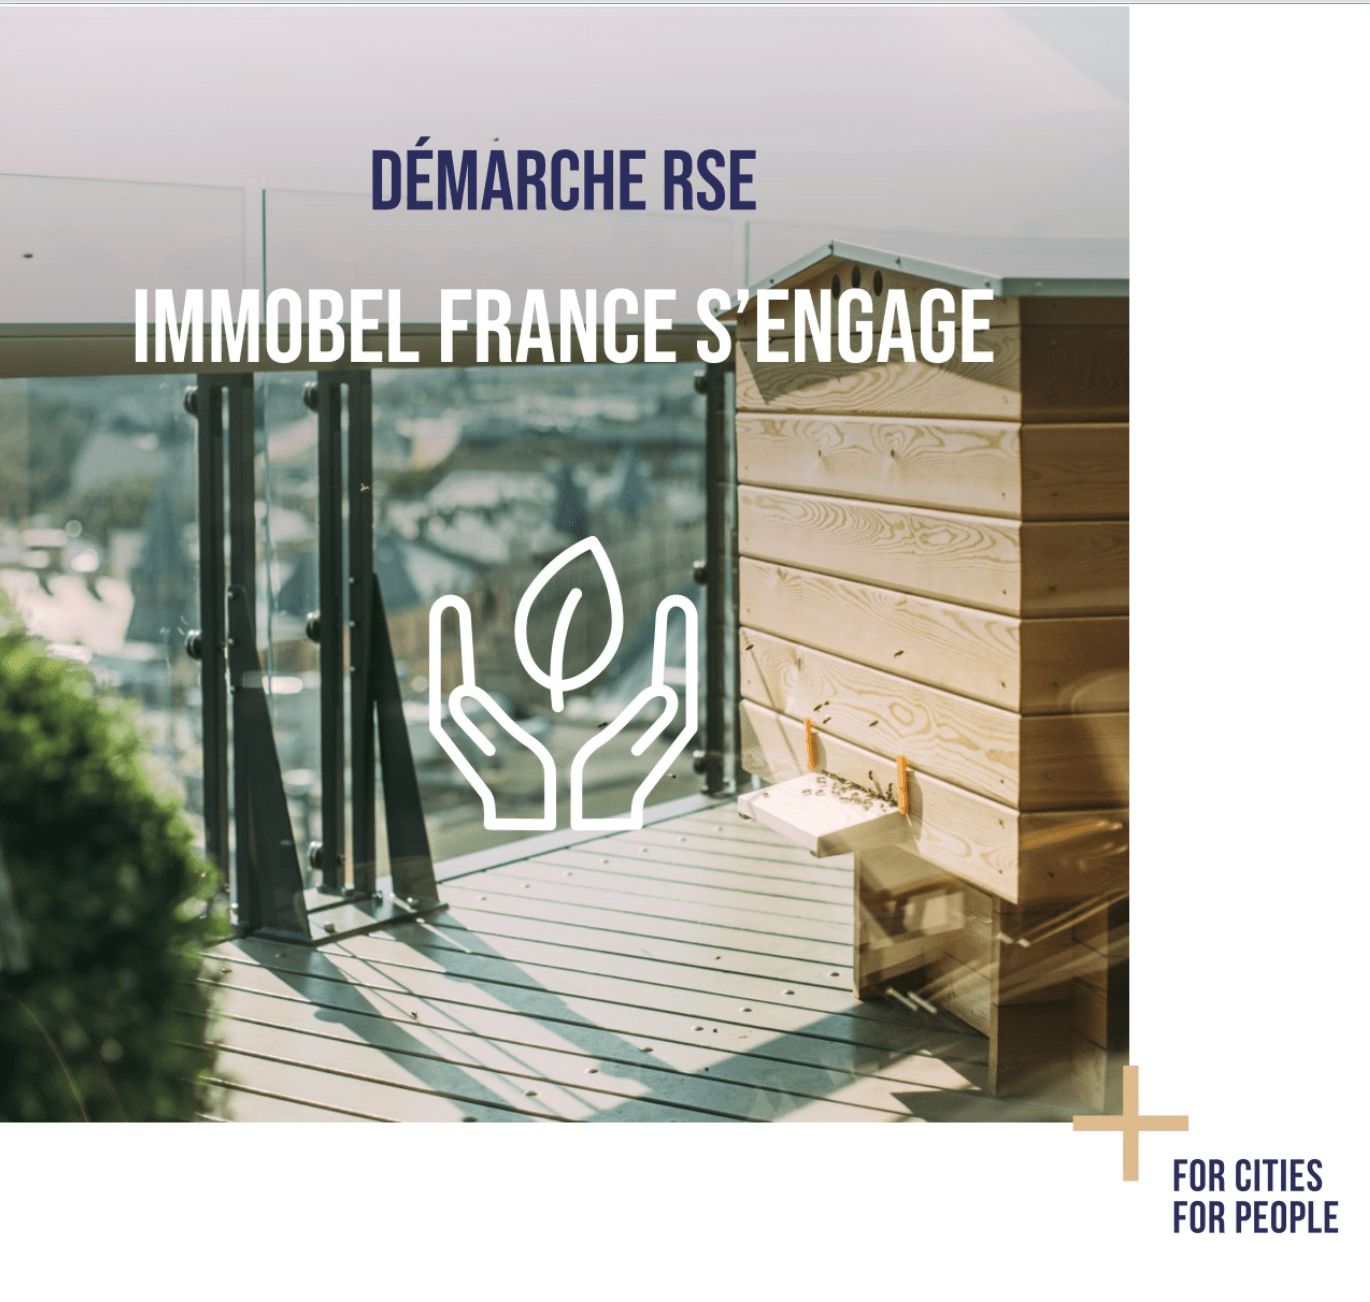 Afin de préserver la biodiversité, Immobel France s’engage auprès de l’association La Maison des Abeilles Heureuses, pour favoriser la protection et la démultiplication des abeilles. 🐝